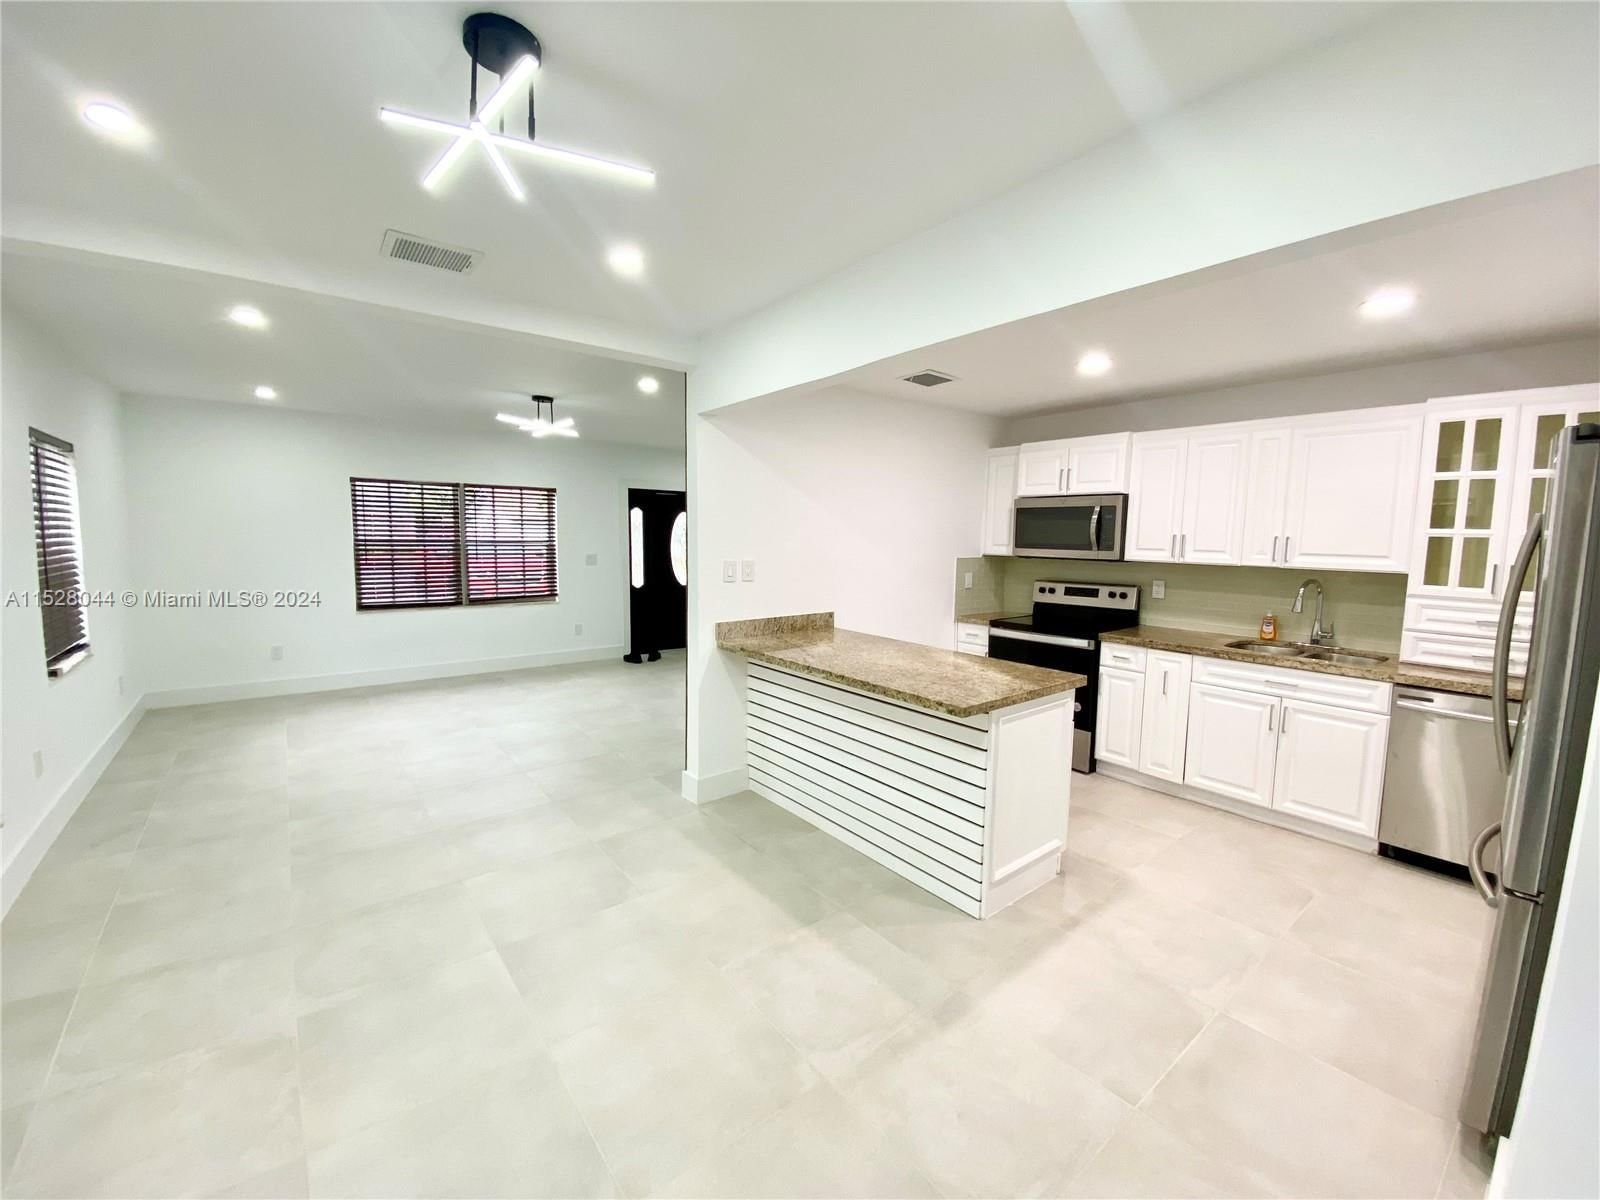 Real estate property located at 340 Tamiami Blvd, Miami-Dade County, FLAGAMI SEC A, Miami, FL